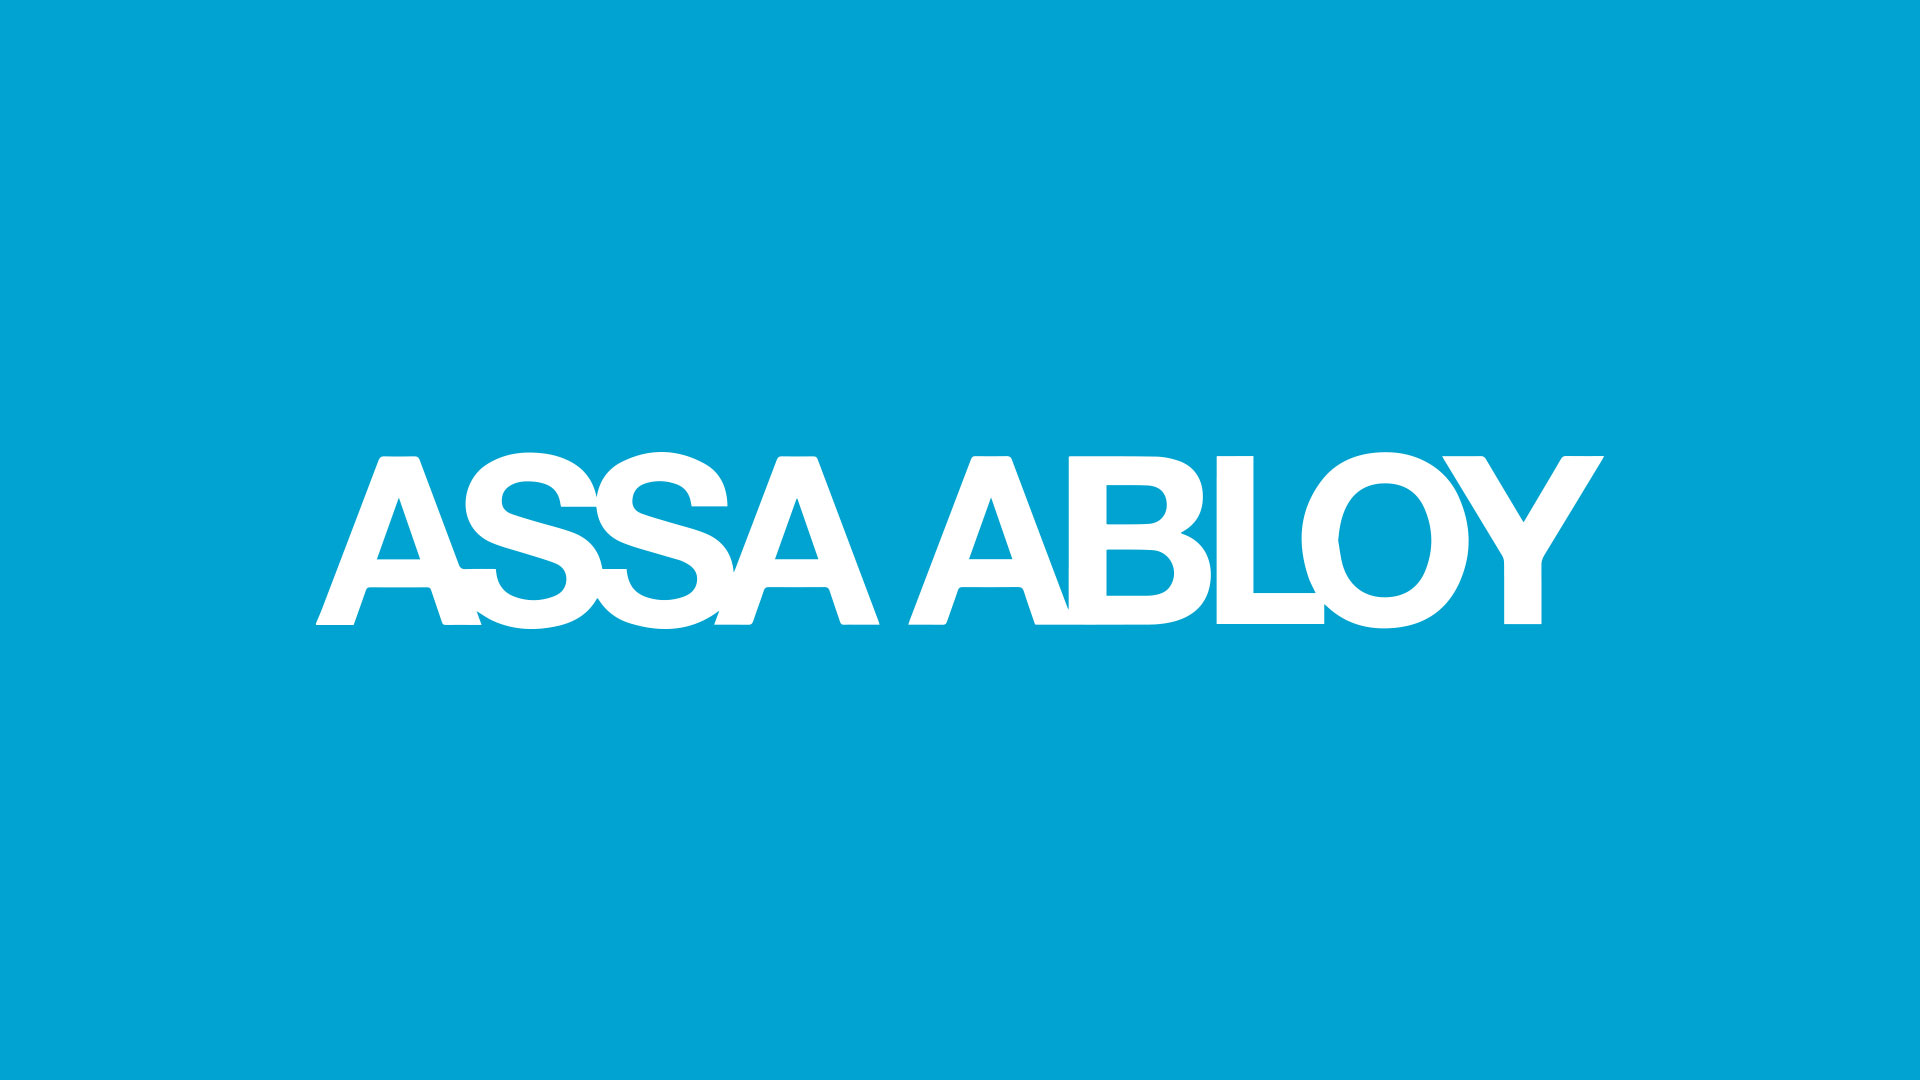 assa abloy branding